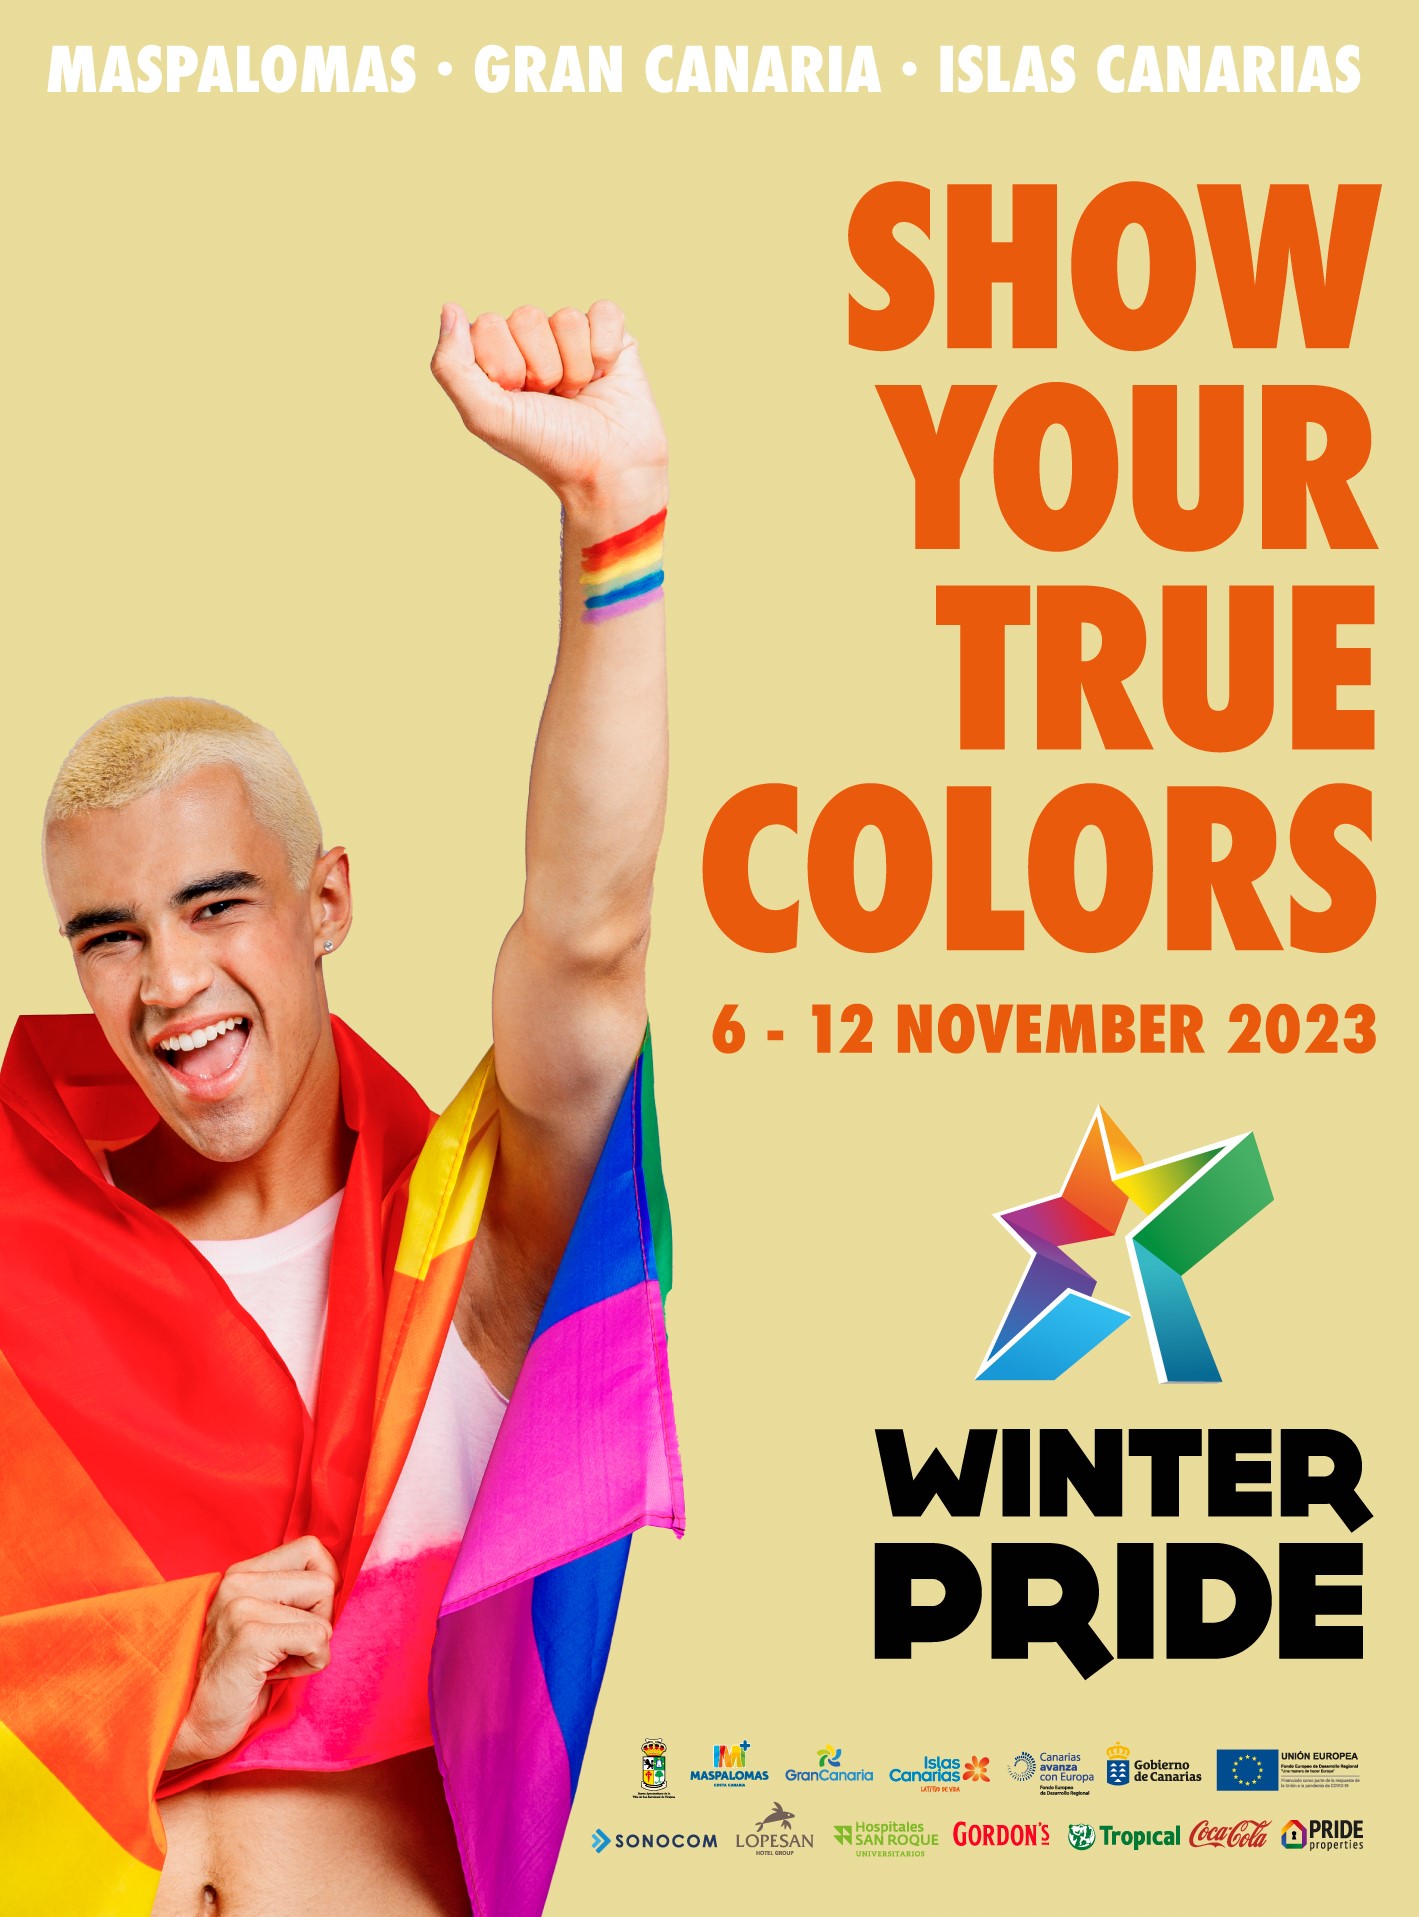 Masaplomas Winter Pride 2023 (Gran Canaria)